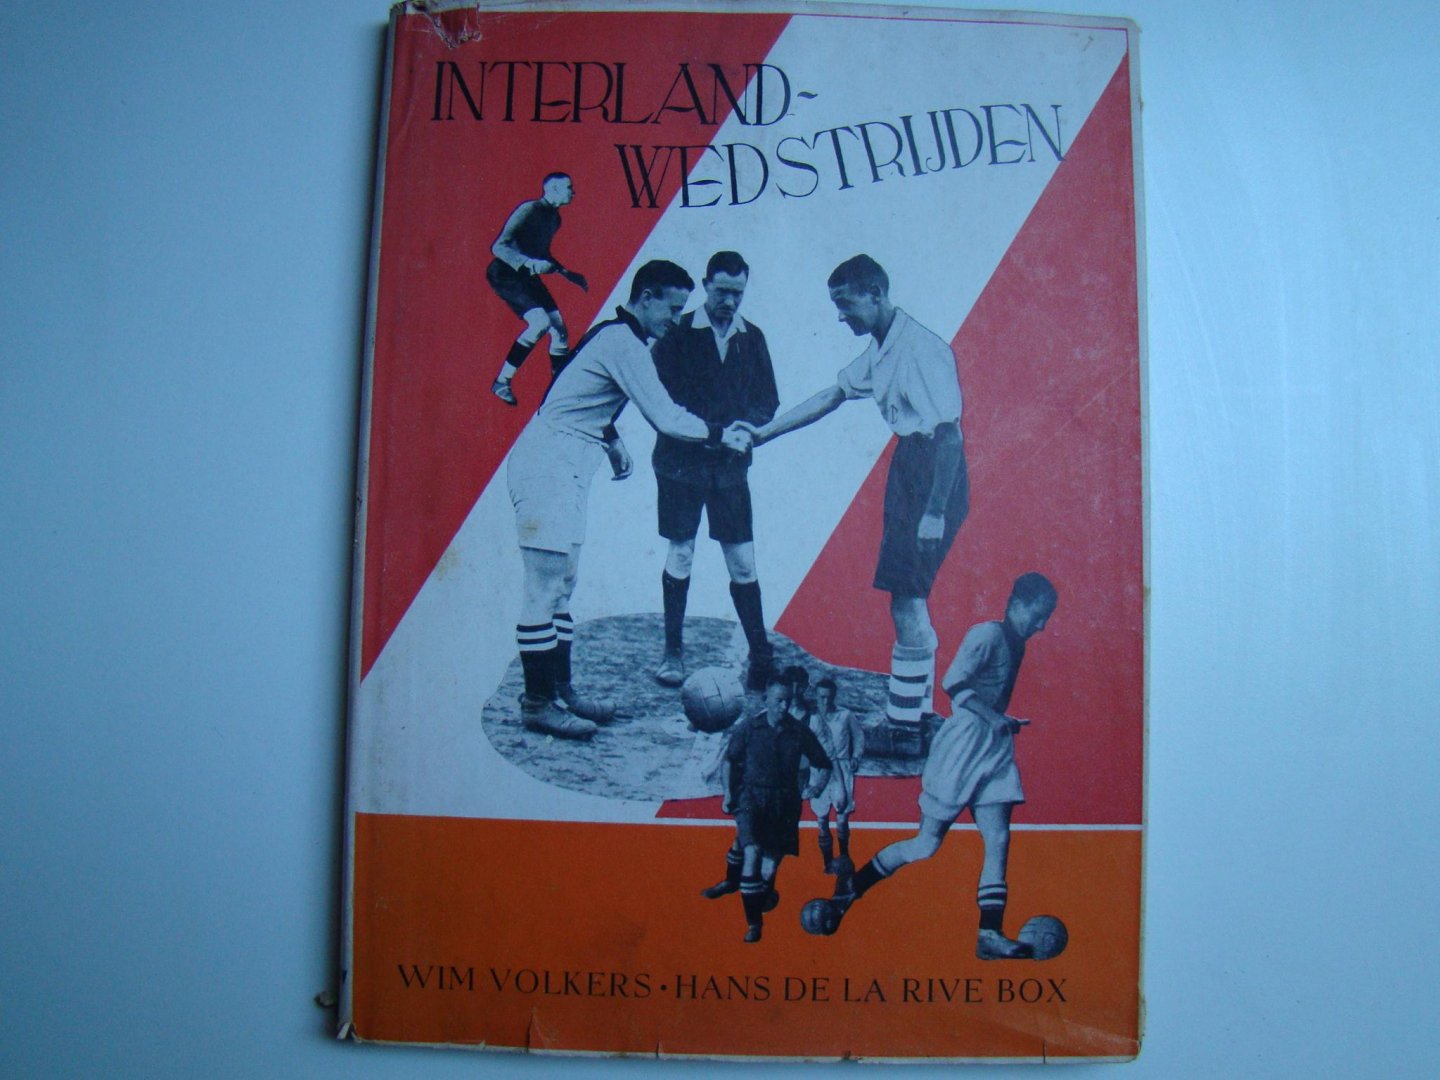 Volkers, Wim en De La Rive Box, Hans - Interlandwedstrijden